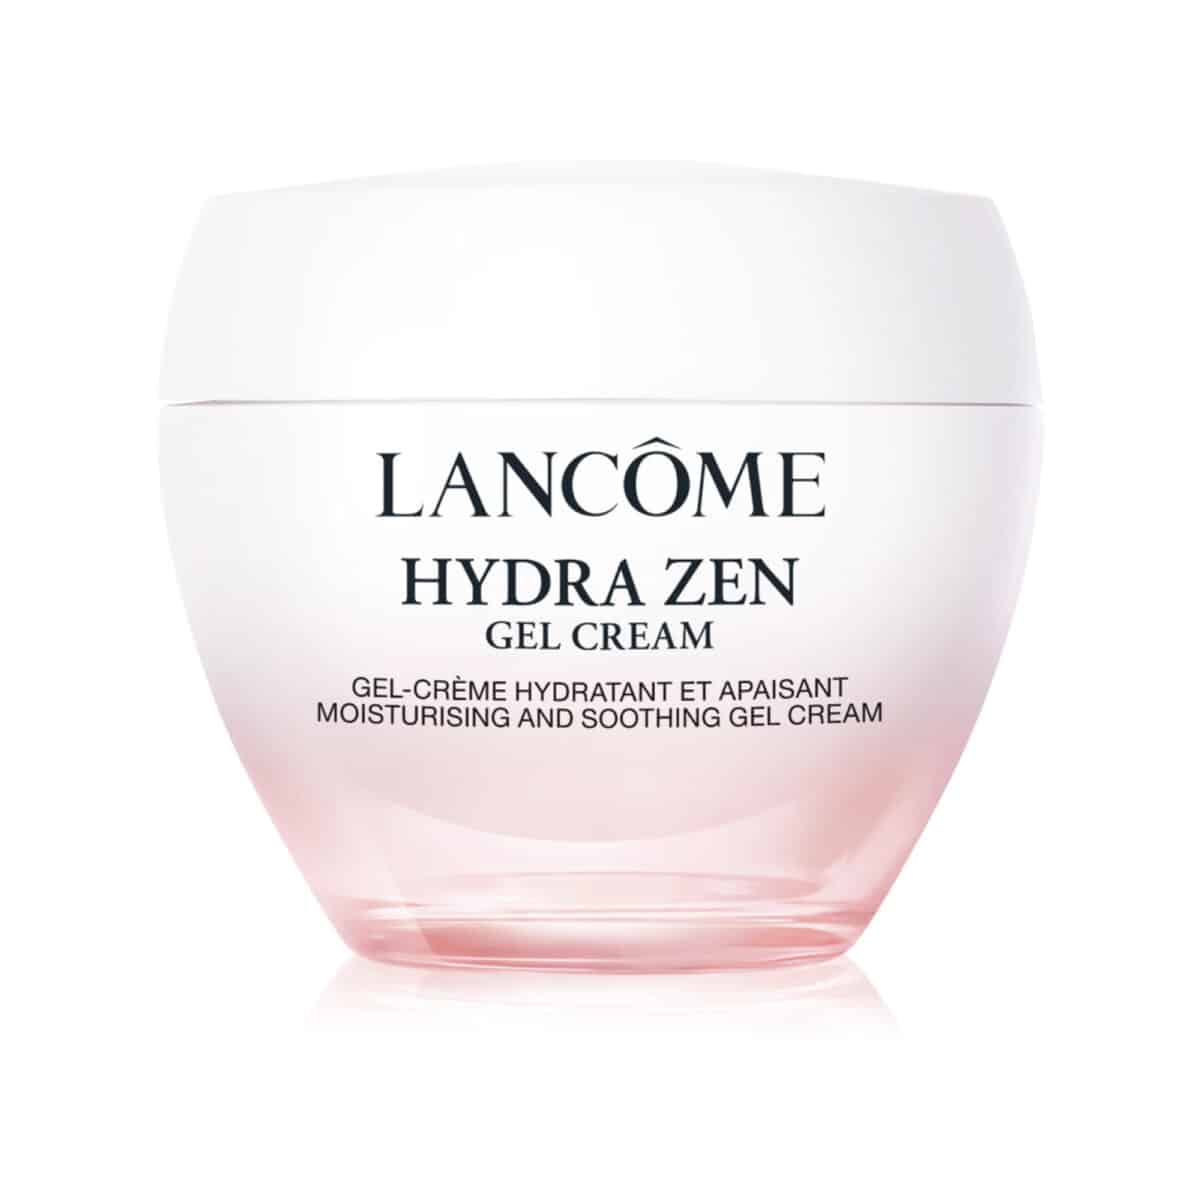 Lancôme Hydra Zen Gel Creme 50ml